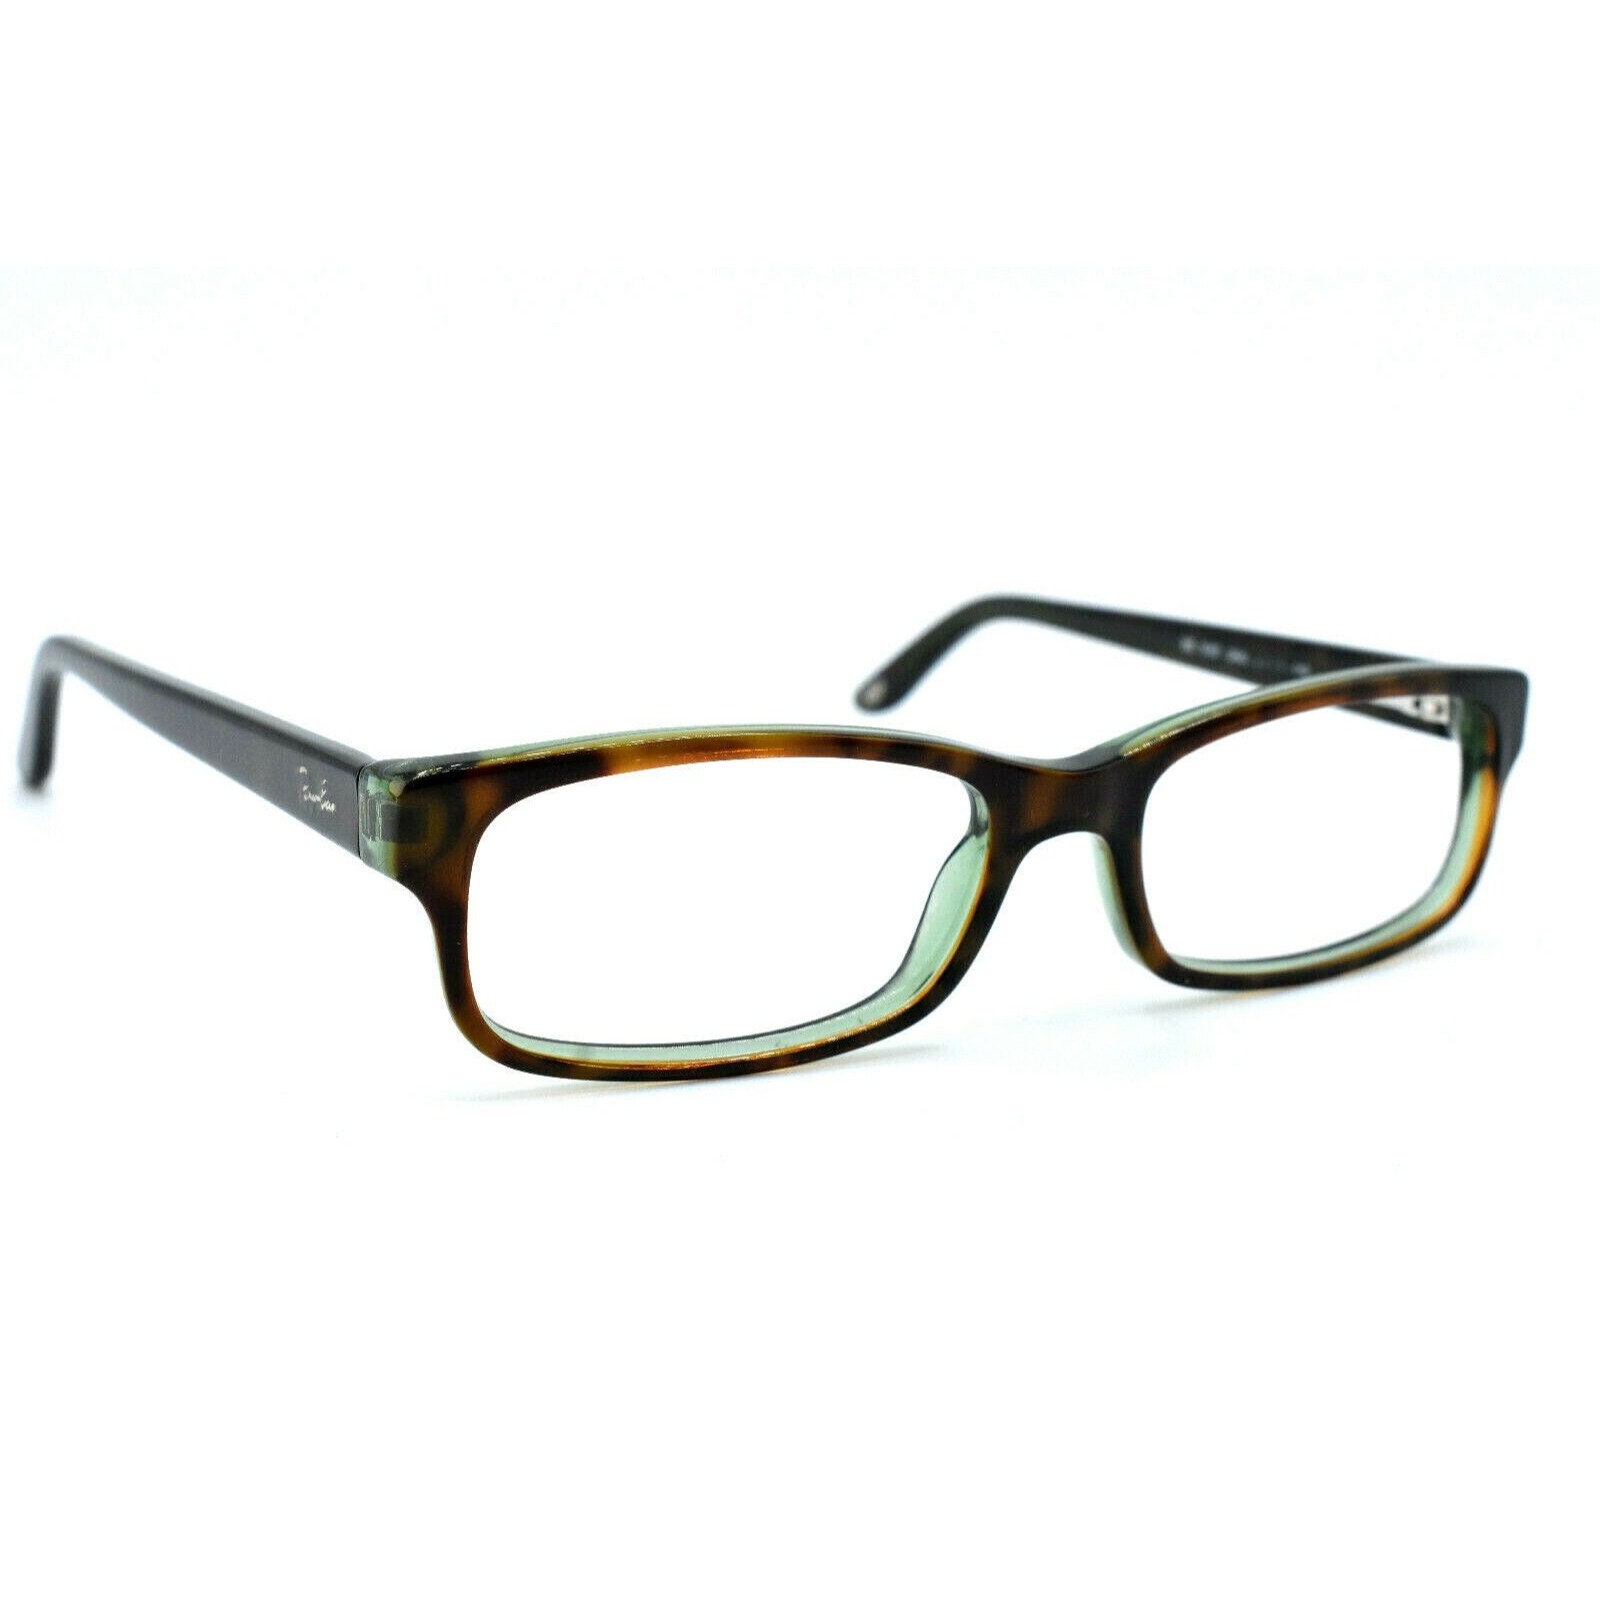 Ray-ban Eyeglasses Women RB 5187 2445 Tortoise/green Full - Etsy